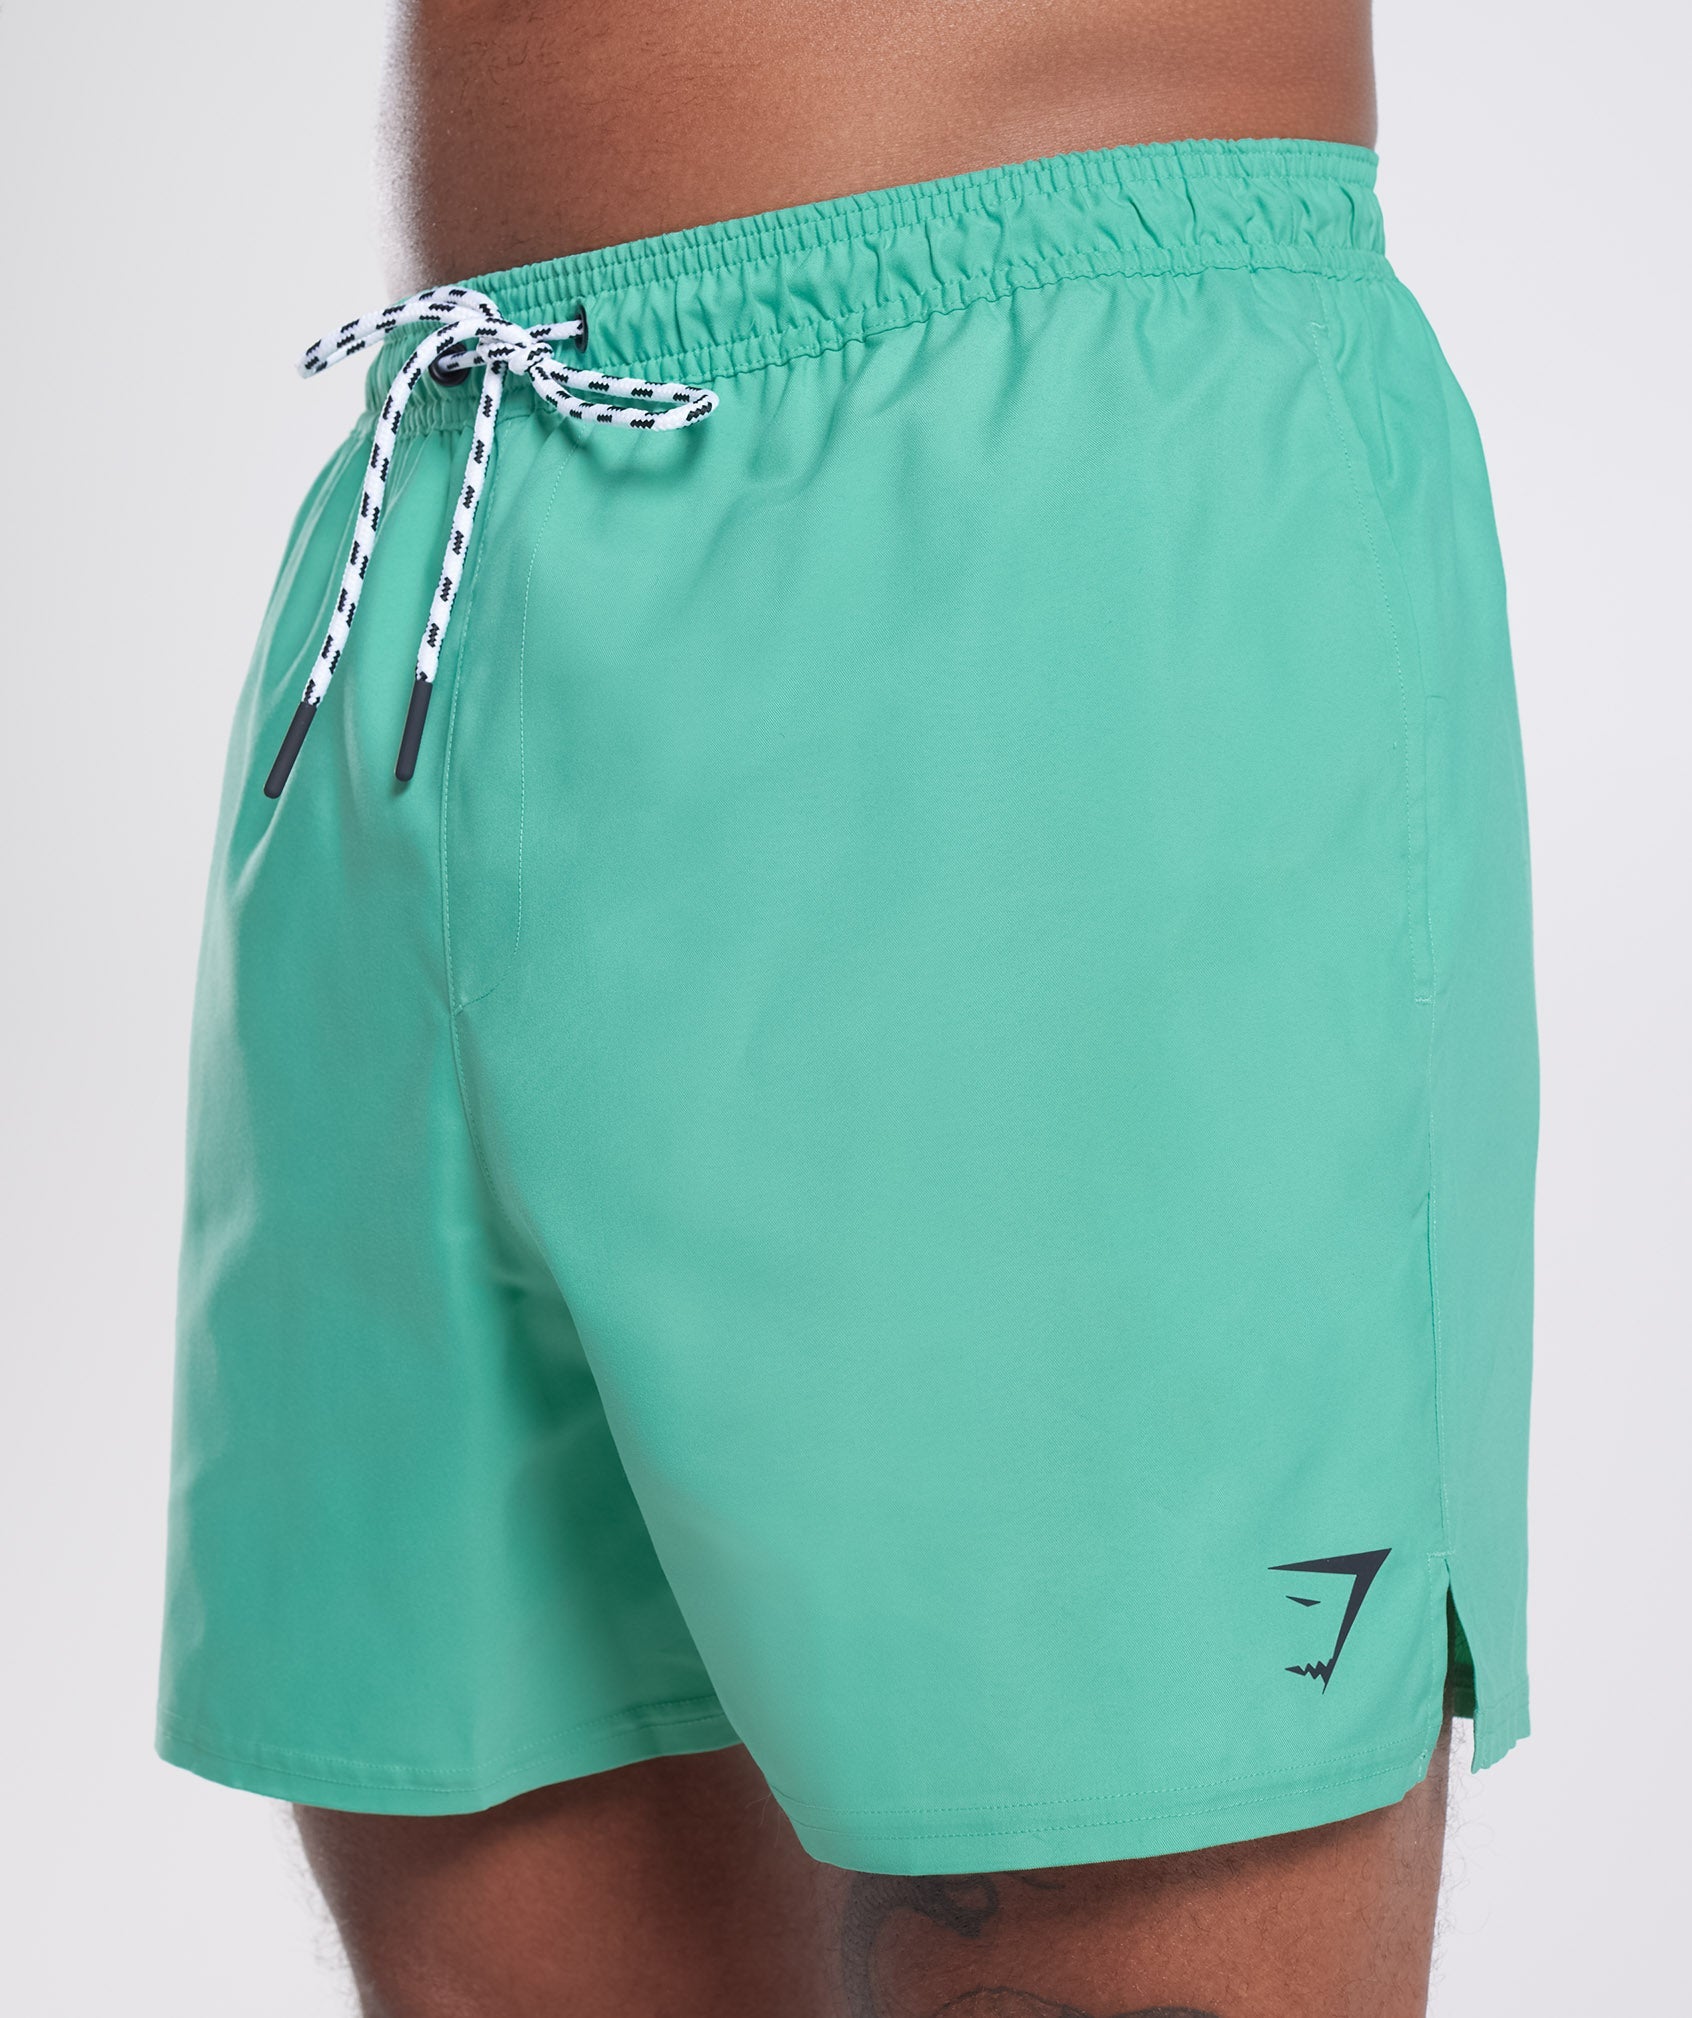 5" Swim Shorts in Oxidized Green